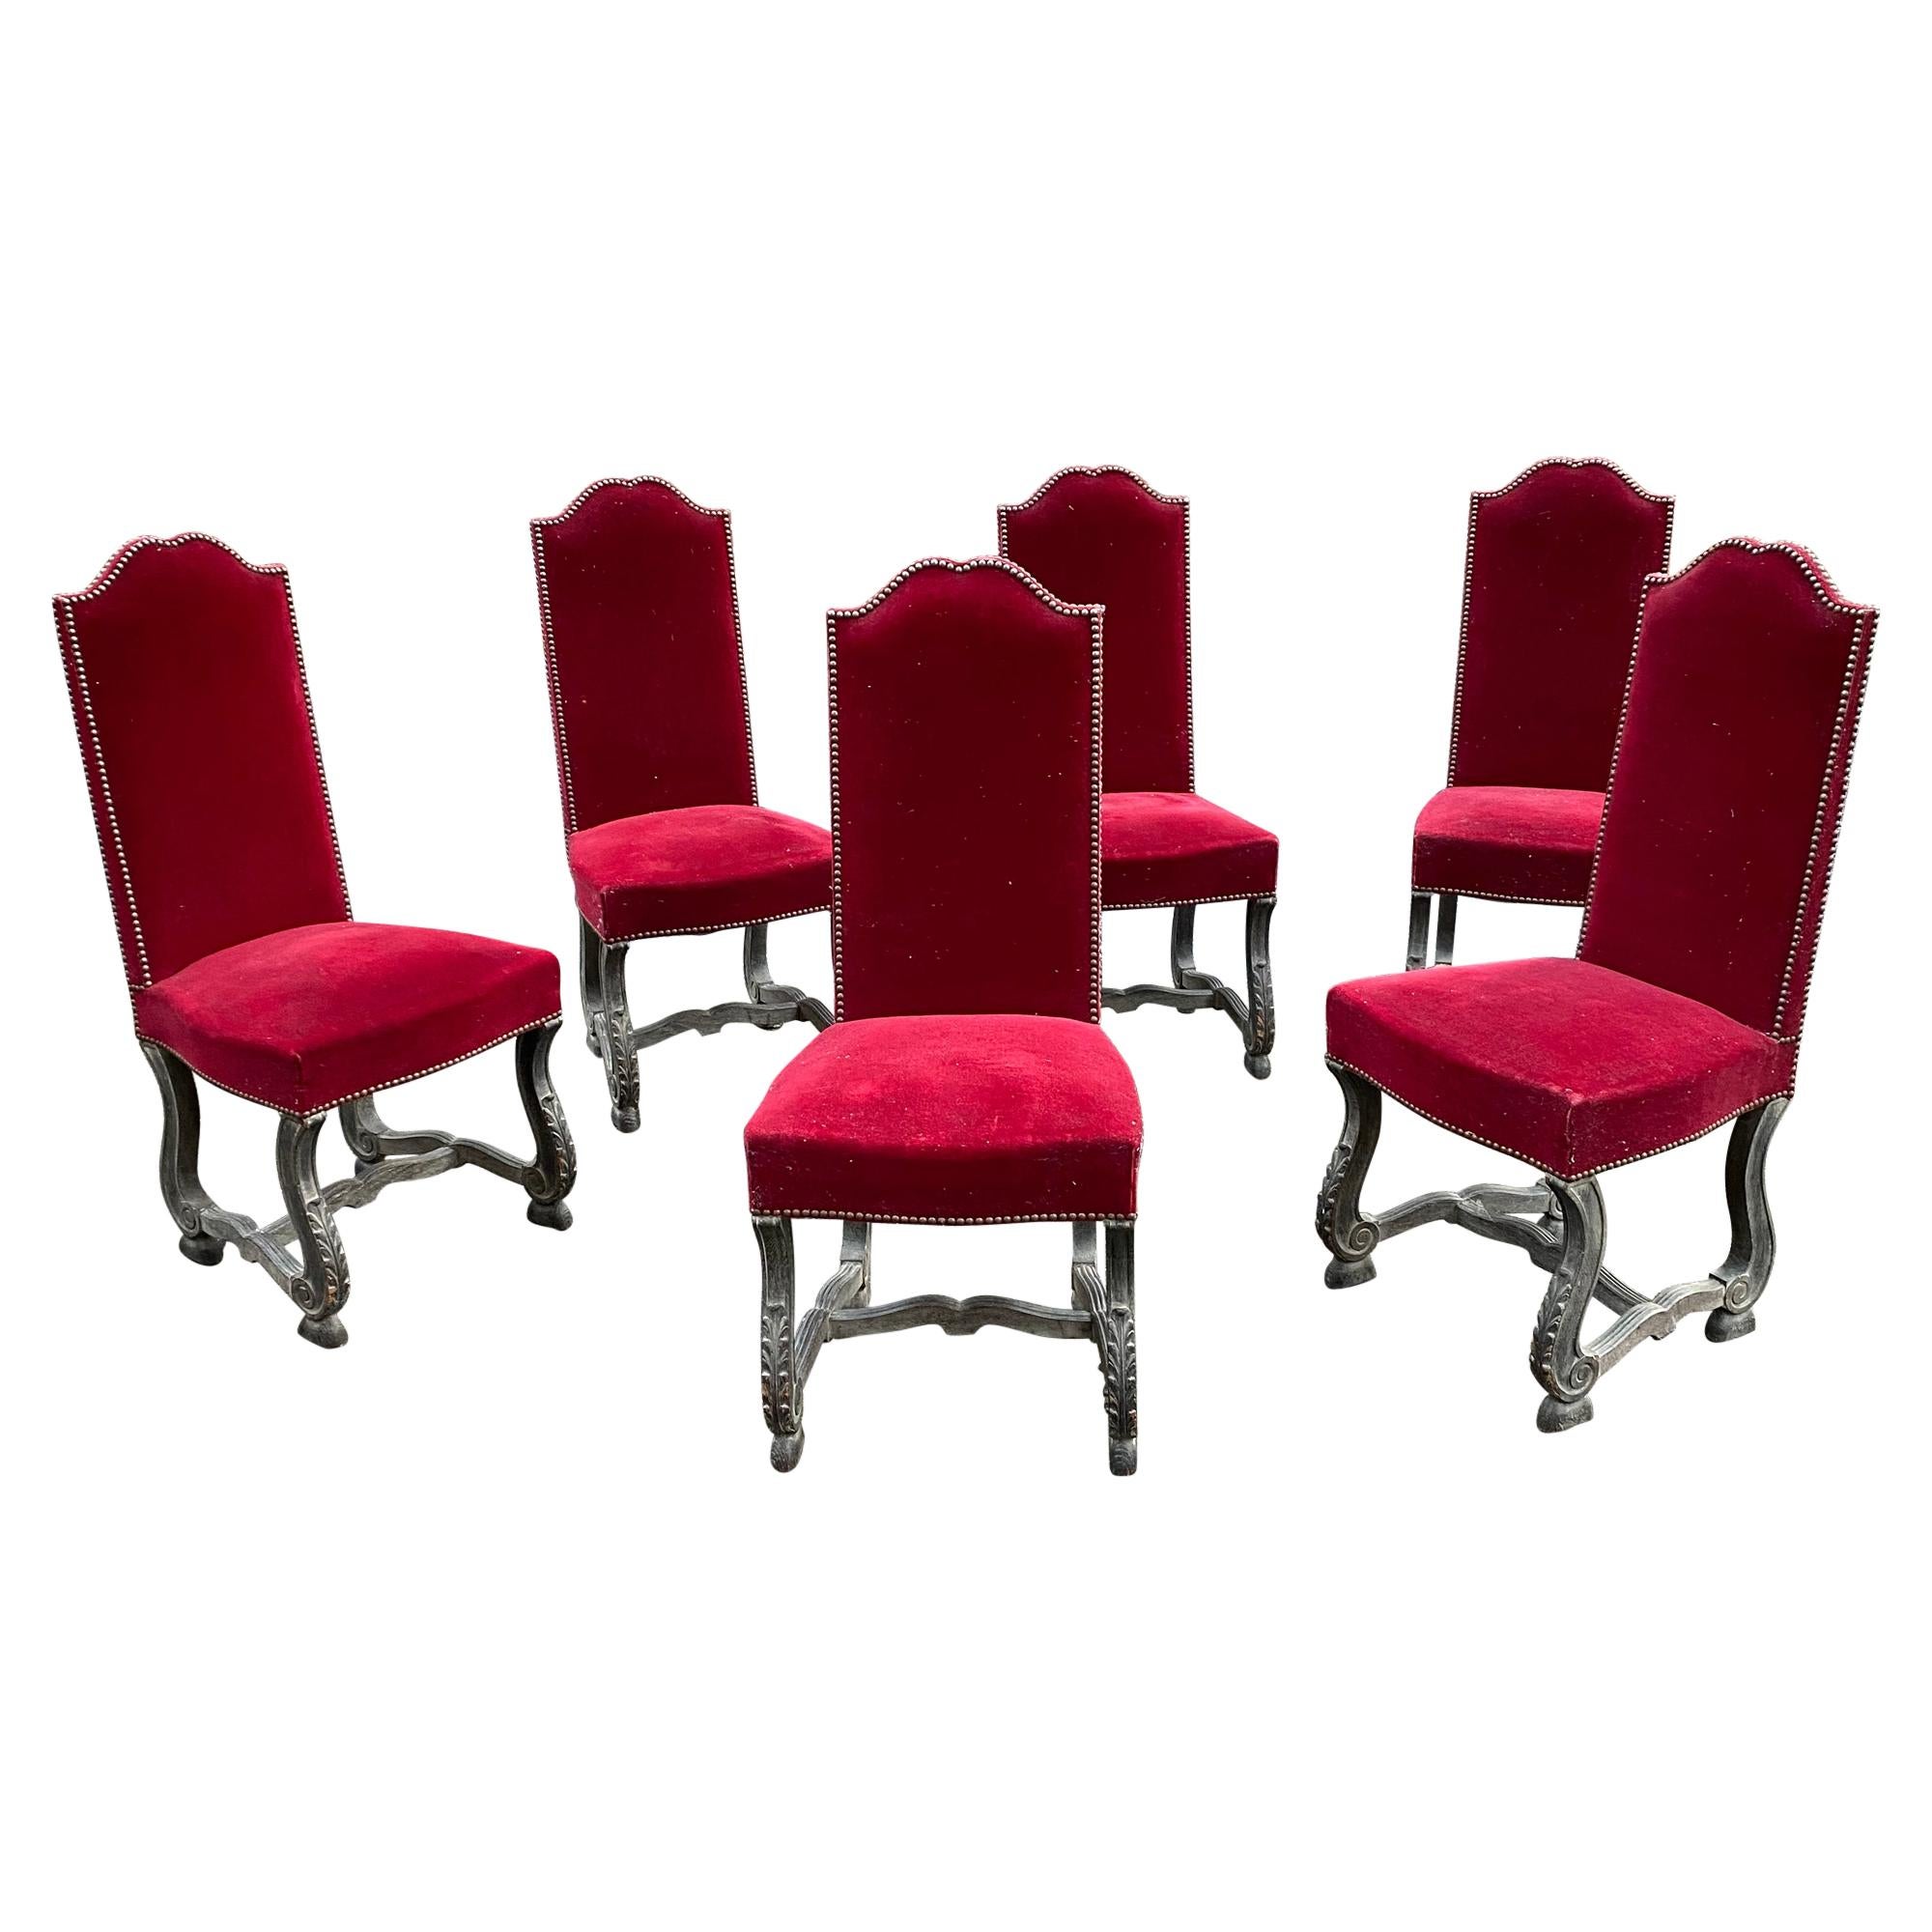 6 chaises néoclassiques en Oak noirci et cérusé, vers 1940-1950